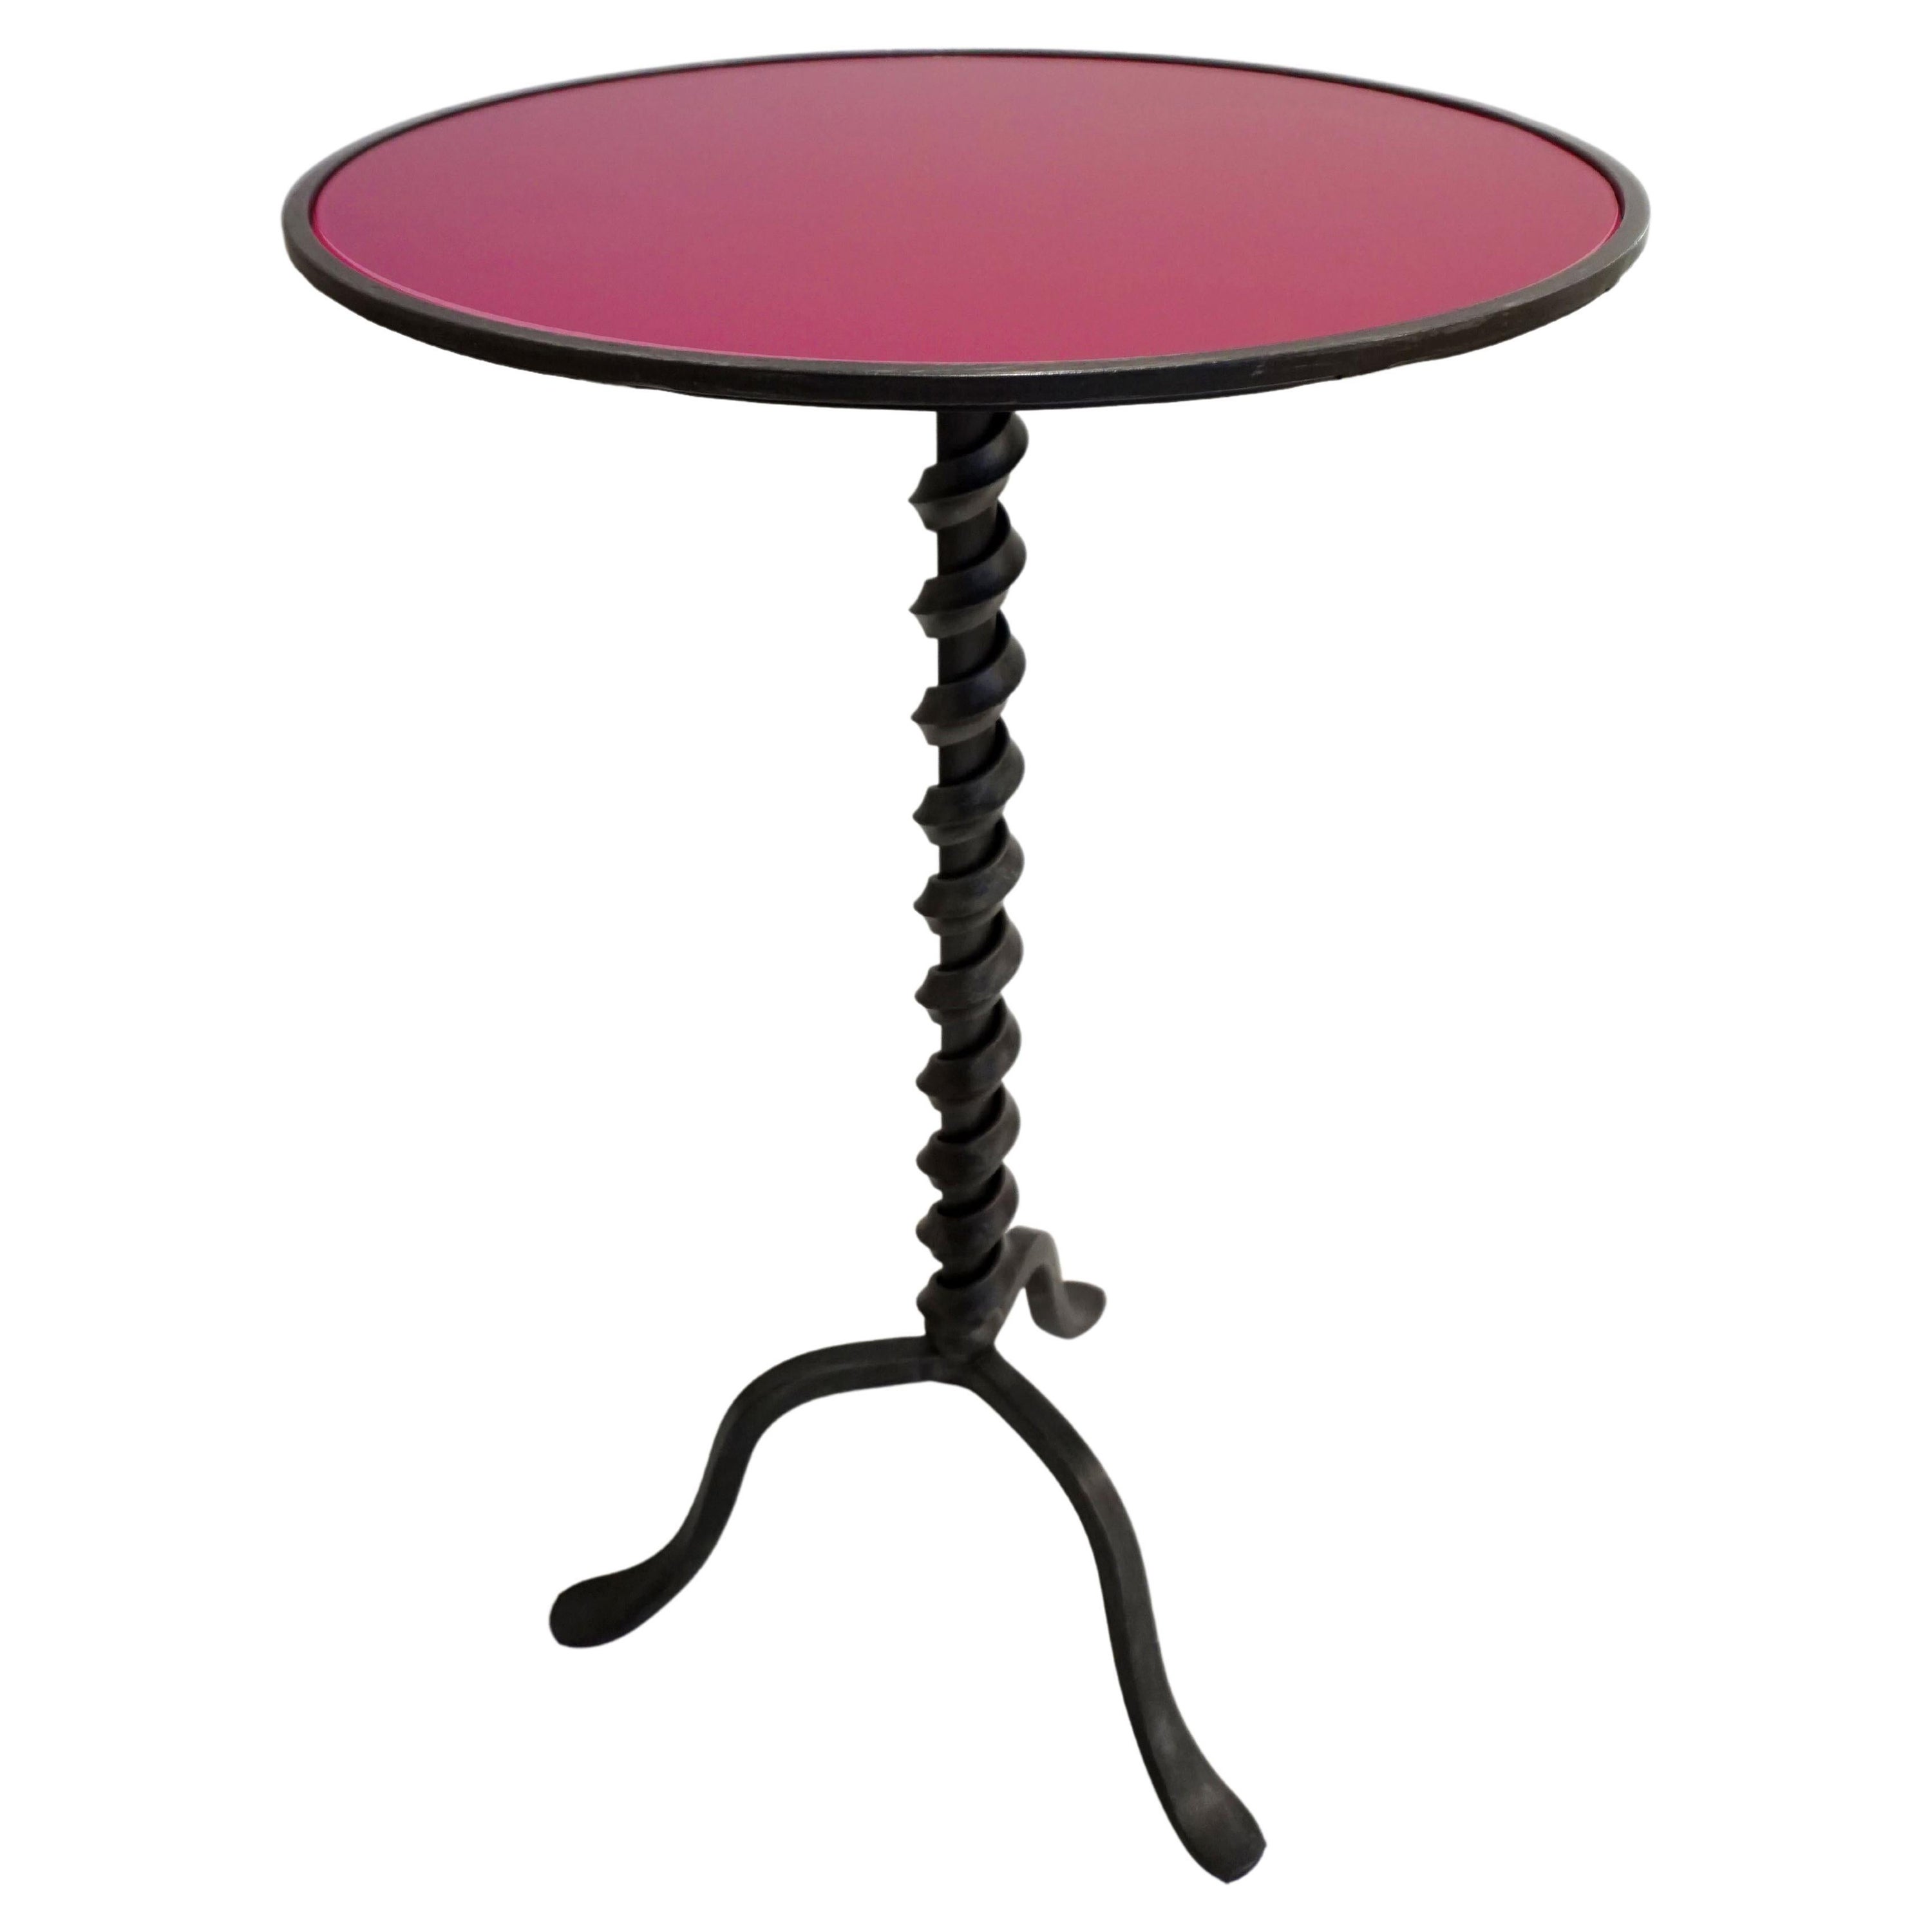 Table basse italienne en fonte torsadée personnalisable couleur verre fuchsia